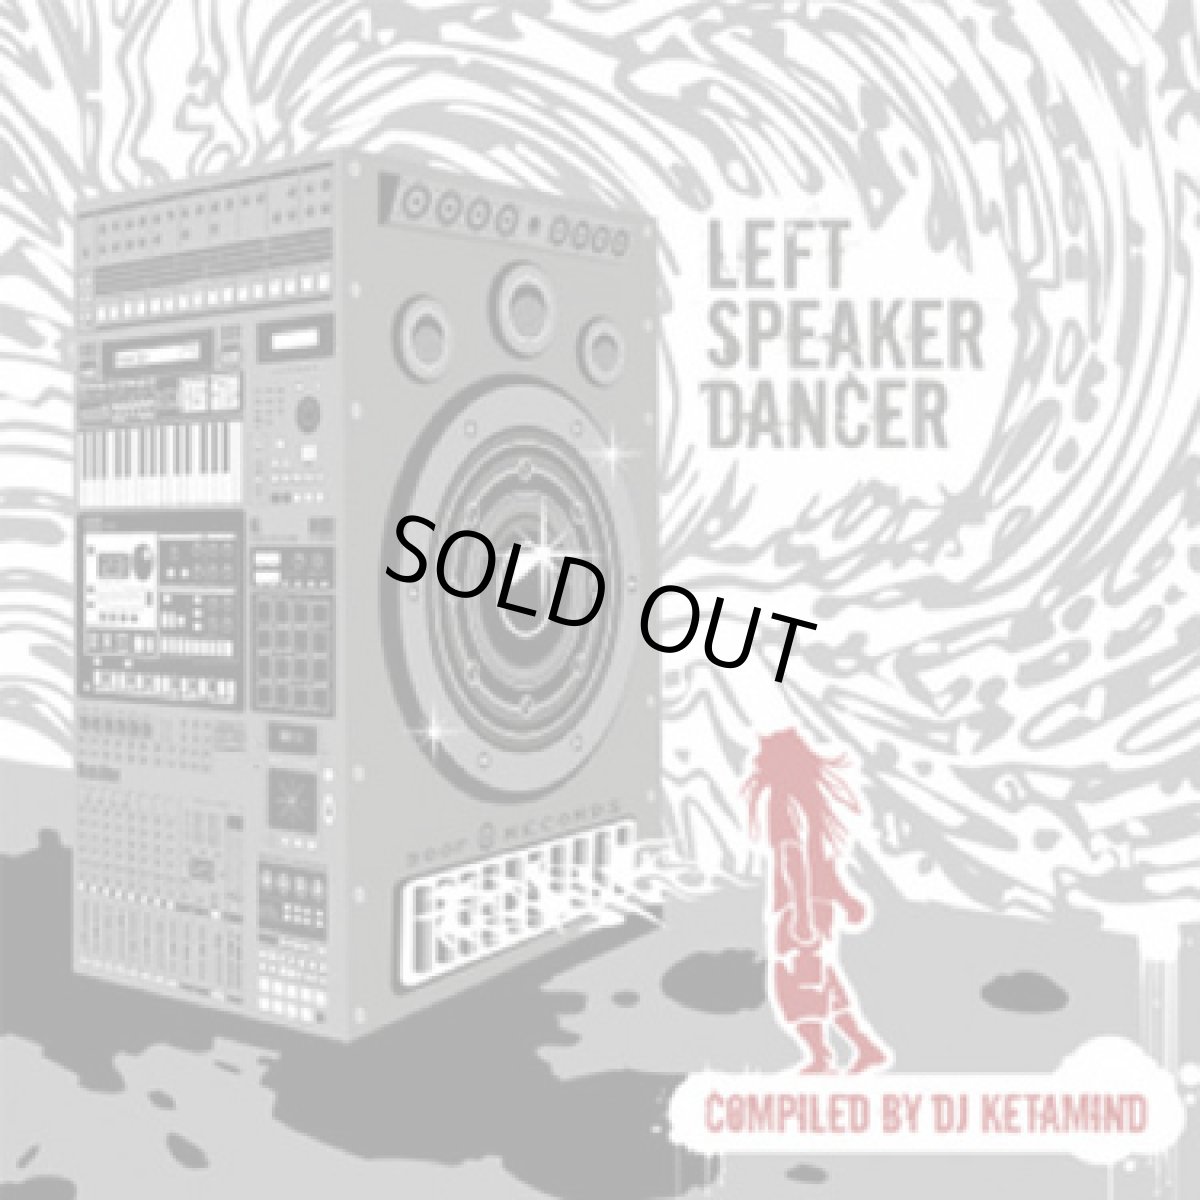 画像1: CD「 V.A / LEFT SPEAKER DANCER 」Compiled by DJ KETAMIND (1)